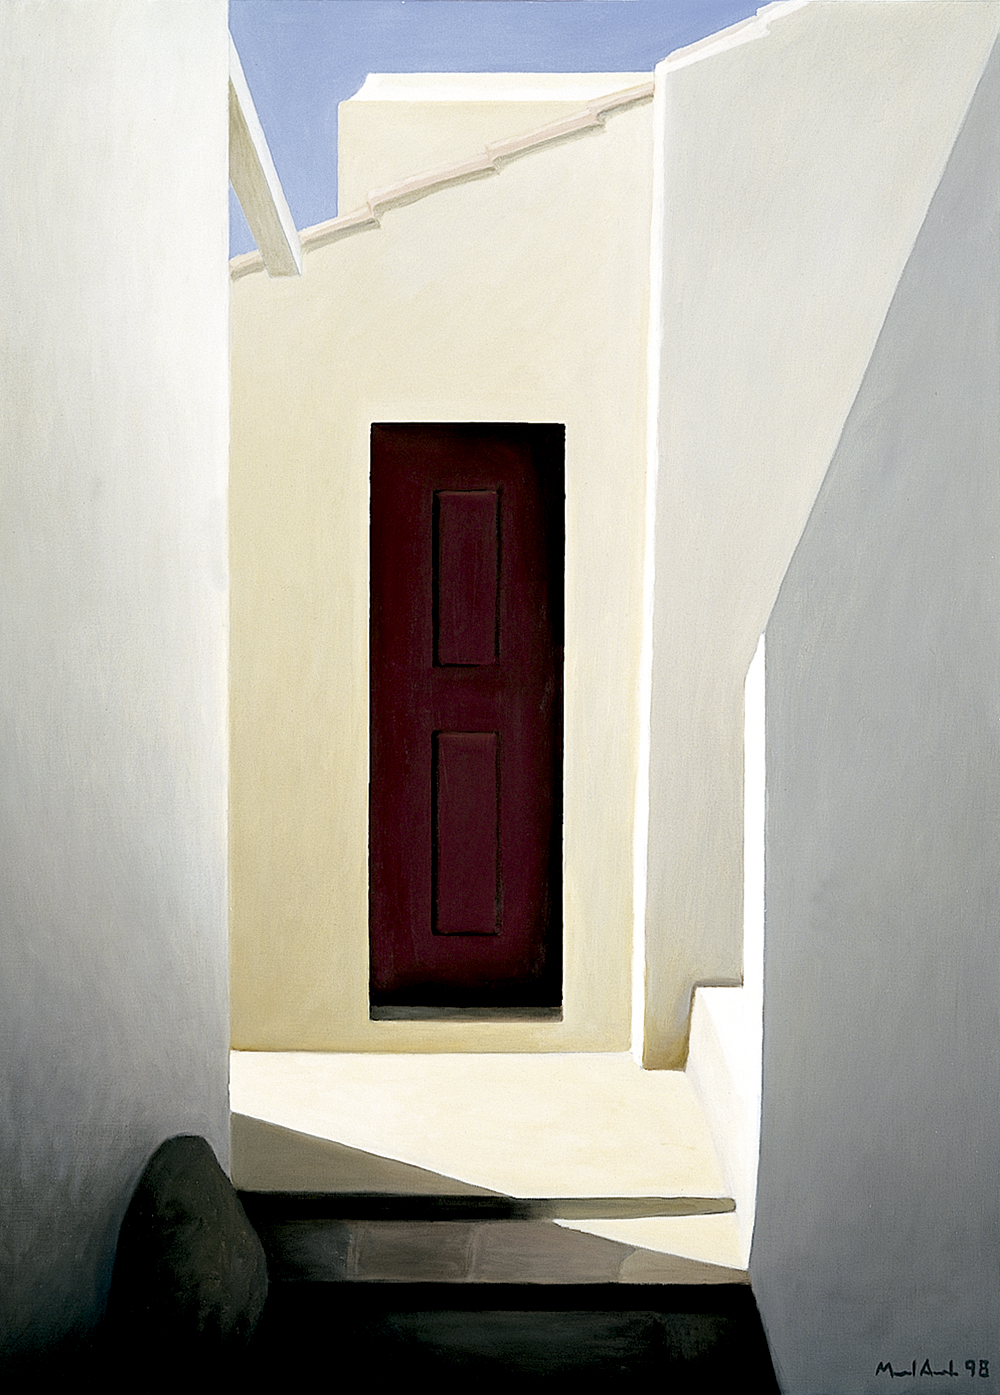 Passage with Door